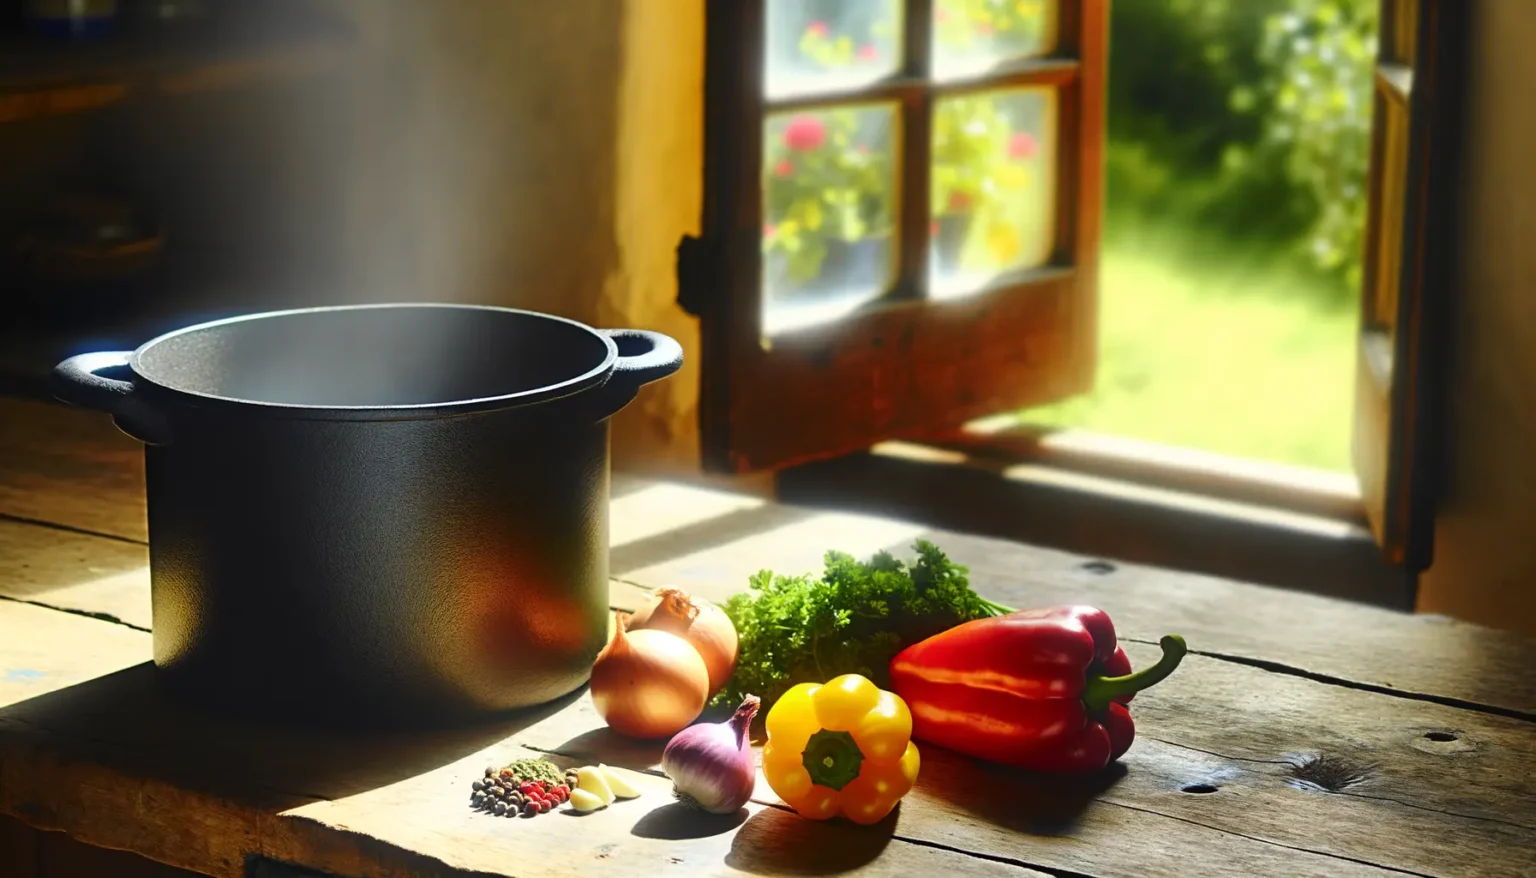 Ein dampfender Topf steht auf einem rustikalen Holztisch neben einer Auswahl an buntem, frischem Gemüse wie Paprika, Zwiebeln und Kräutern in einer atmosphärisch beleuchteten Küche mit einem Fenster, das den Blick auf eine grüne Landschaft freigibt.